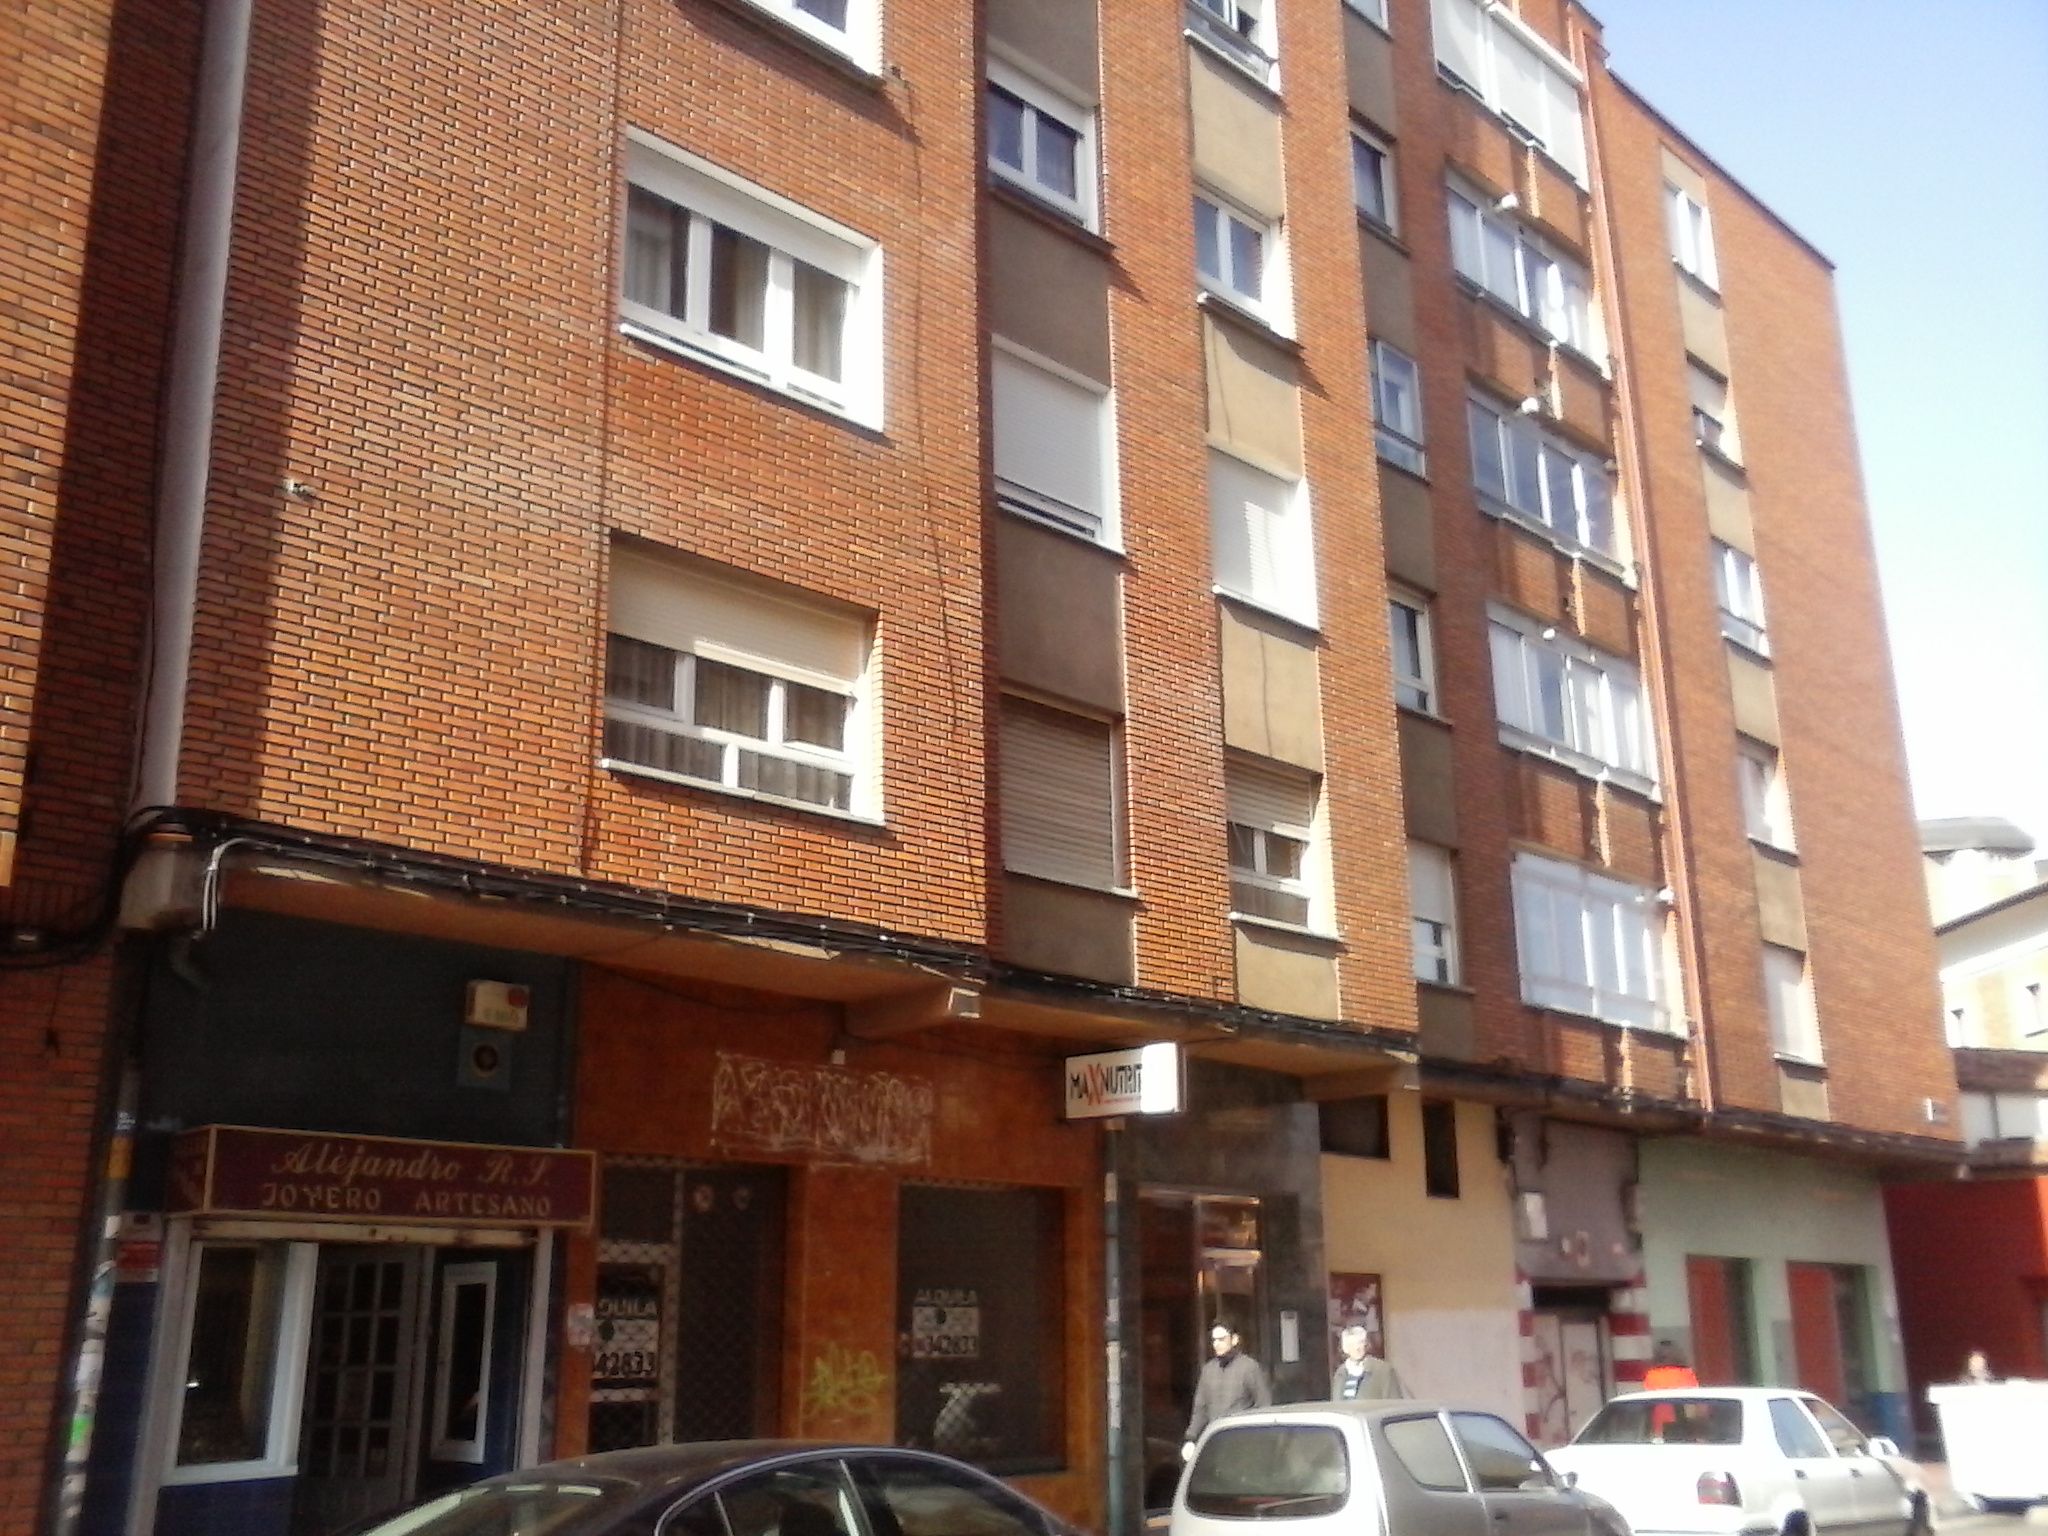 Opiniones sobre las inmobiliarias en Valladolid